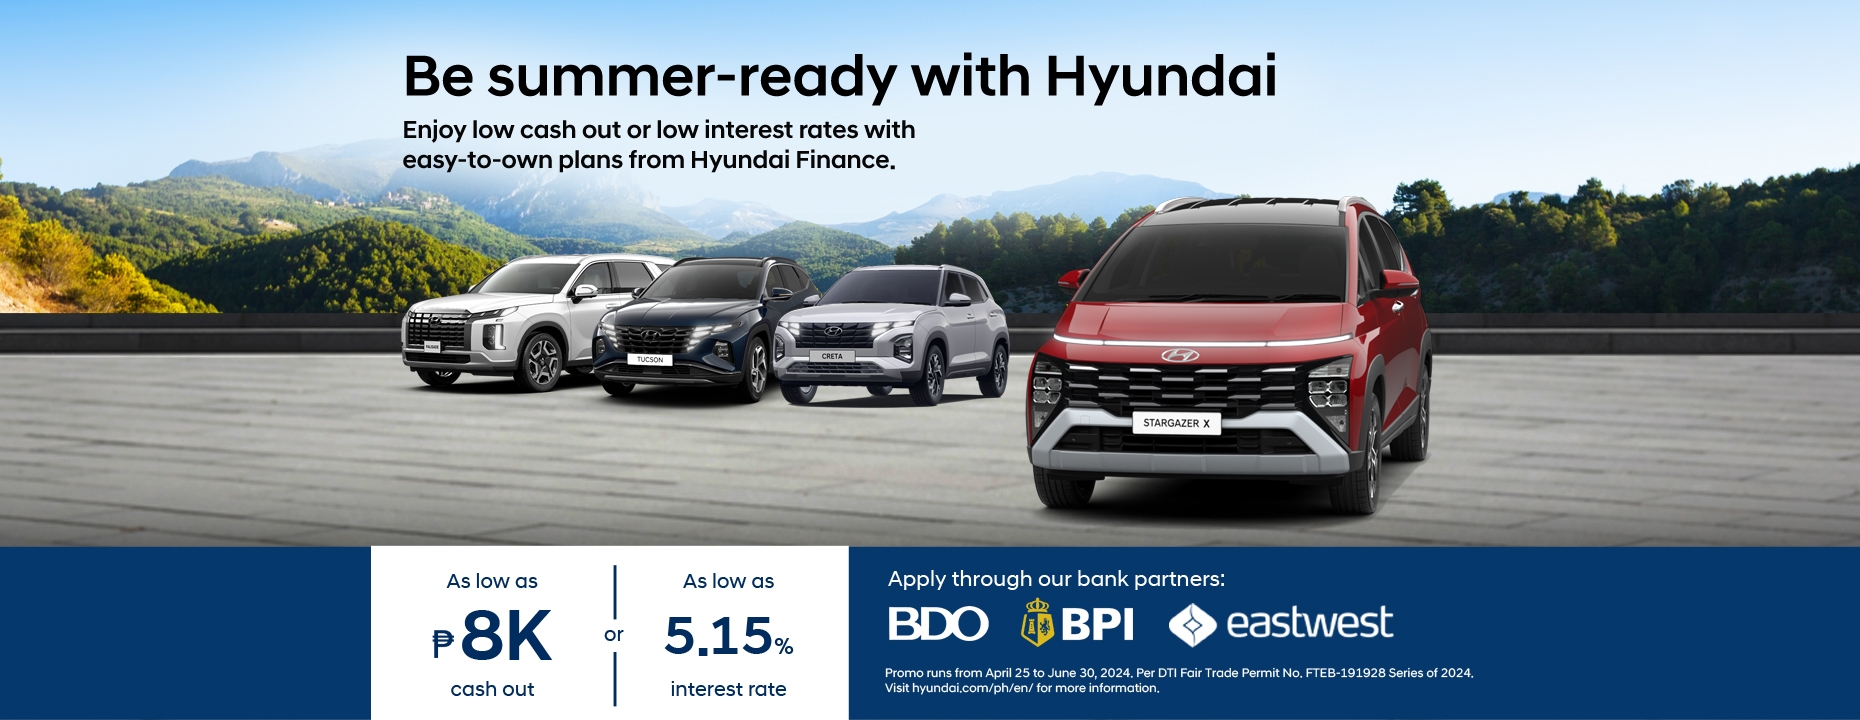 Hyundai Retail Promo